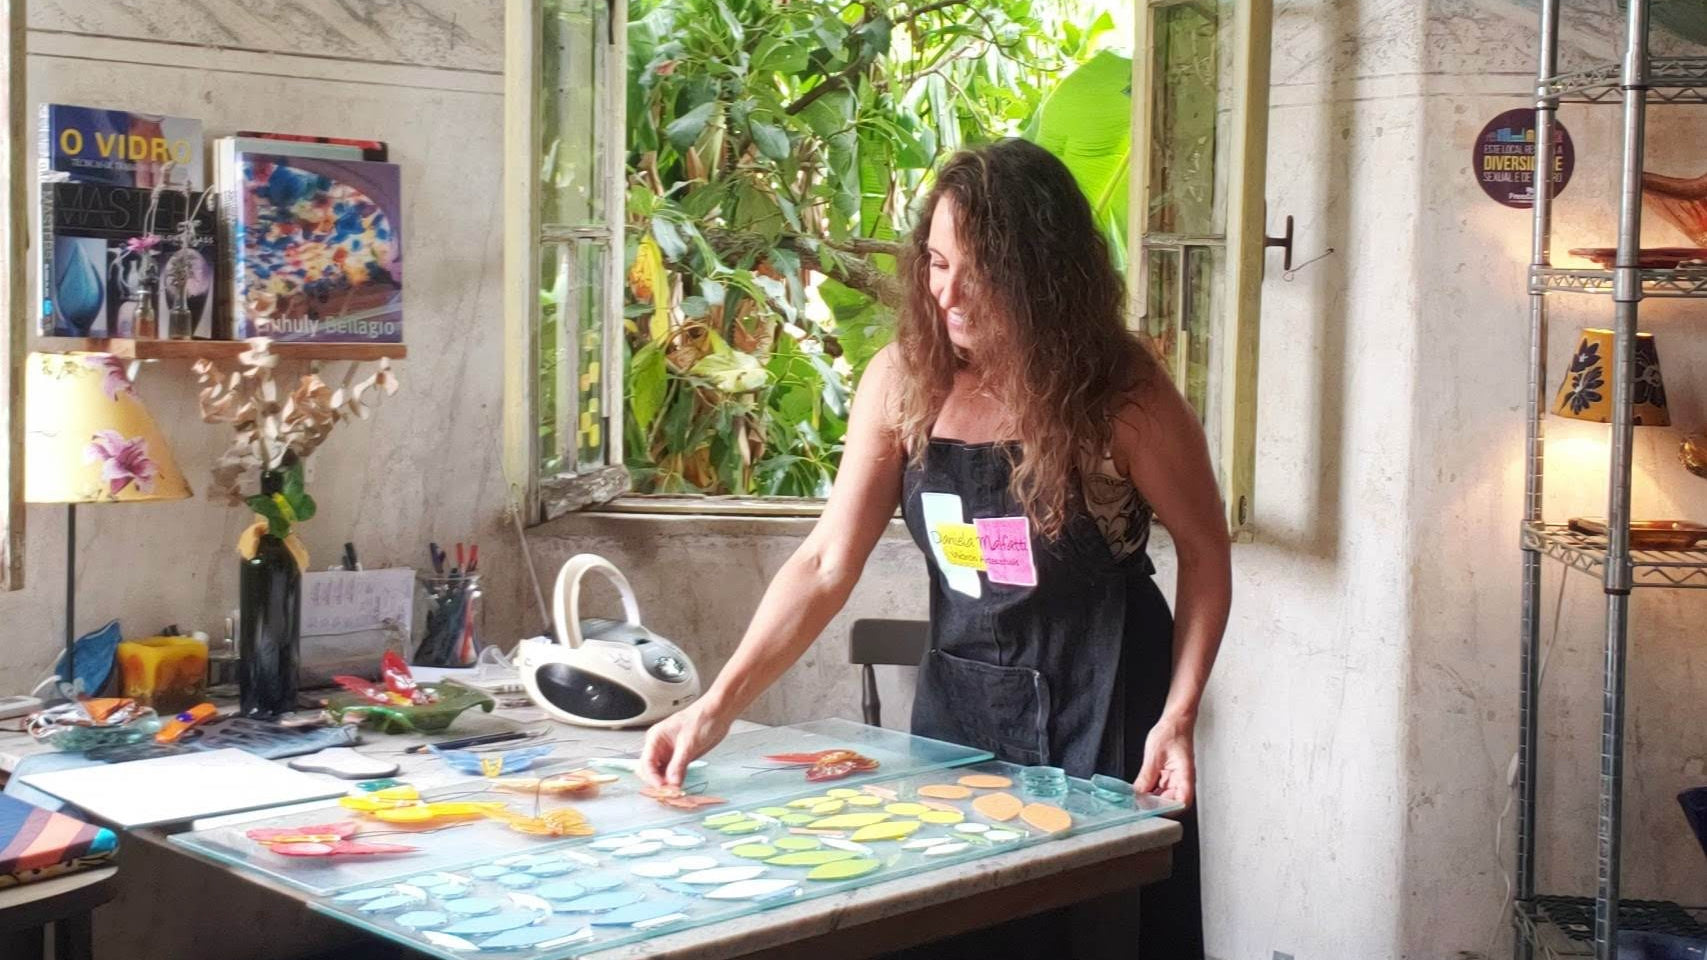 Artista Daniela Malfatti trabalhando em seu atelier no Vila Flores